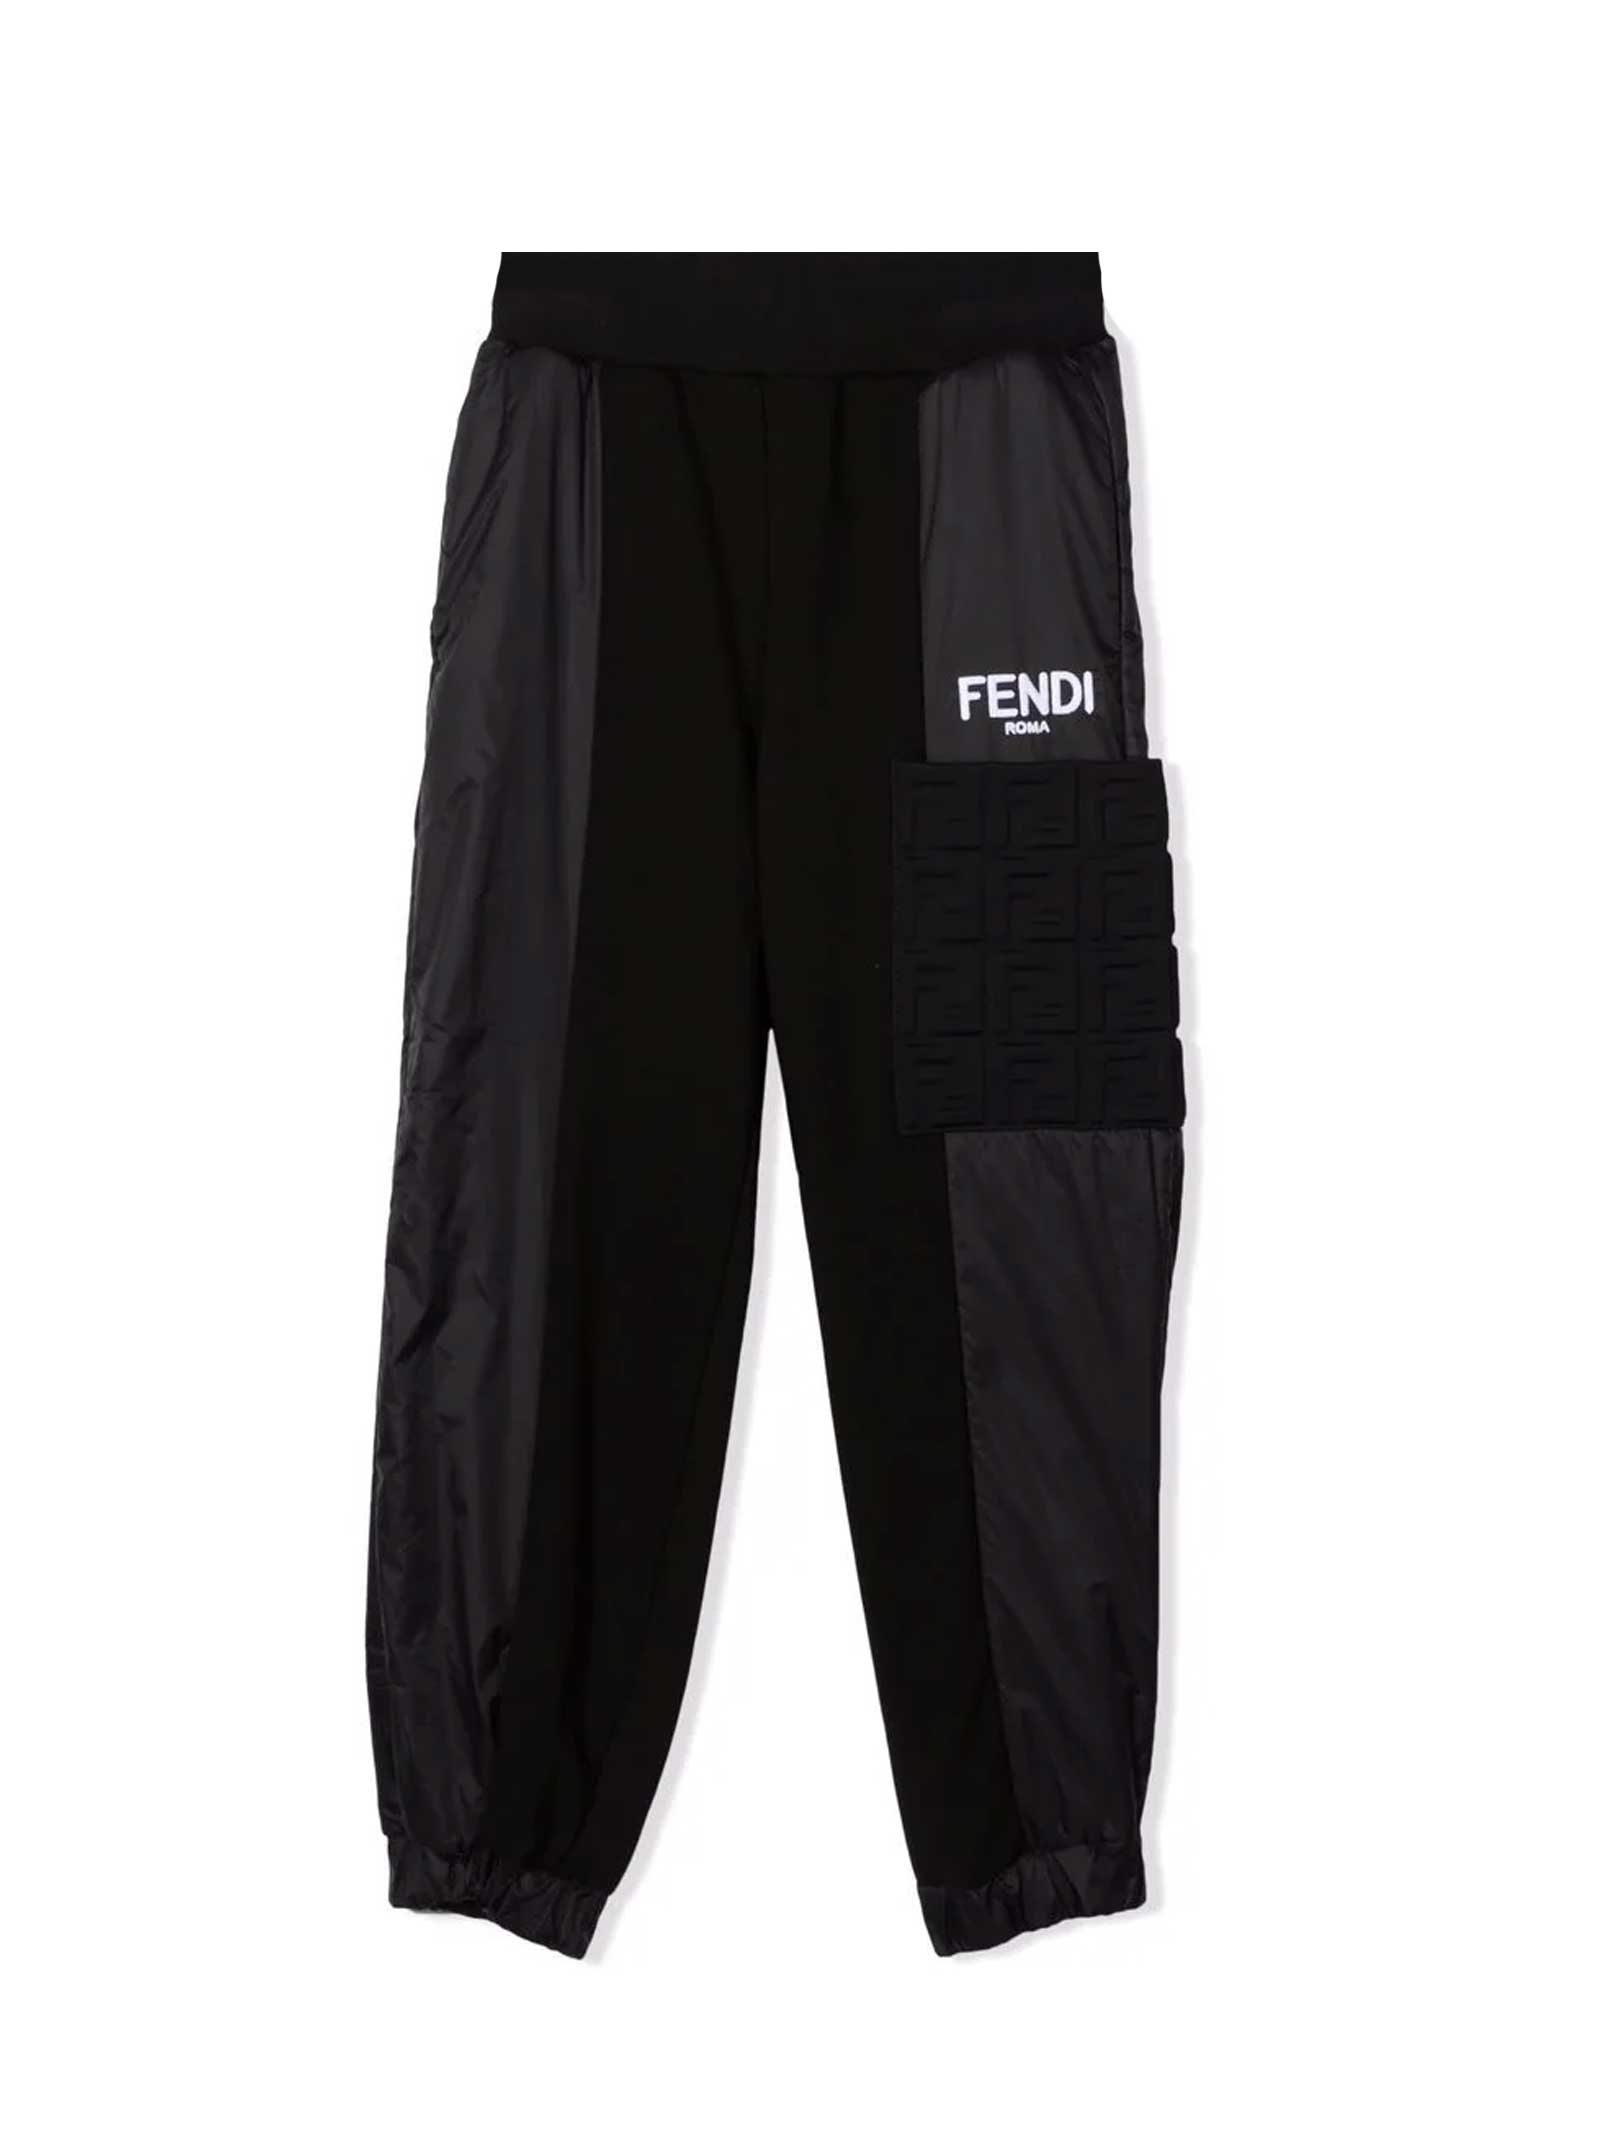 Fendi Black Trousers With White Logo